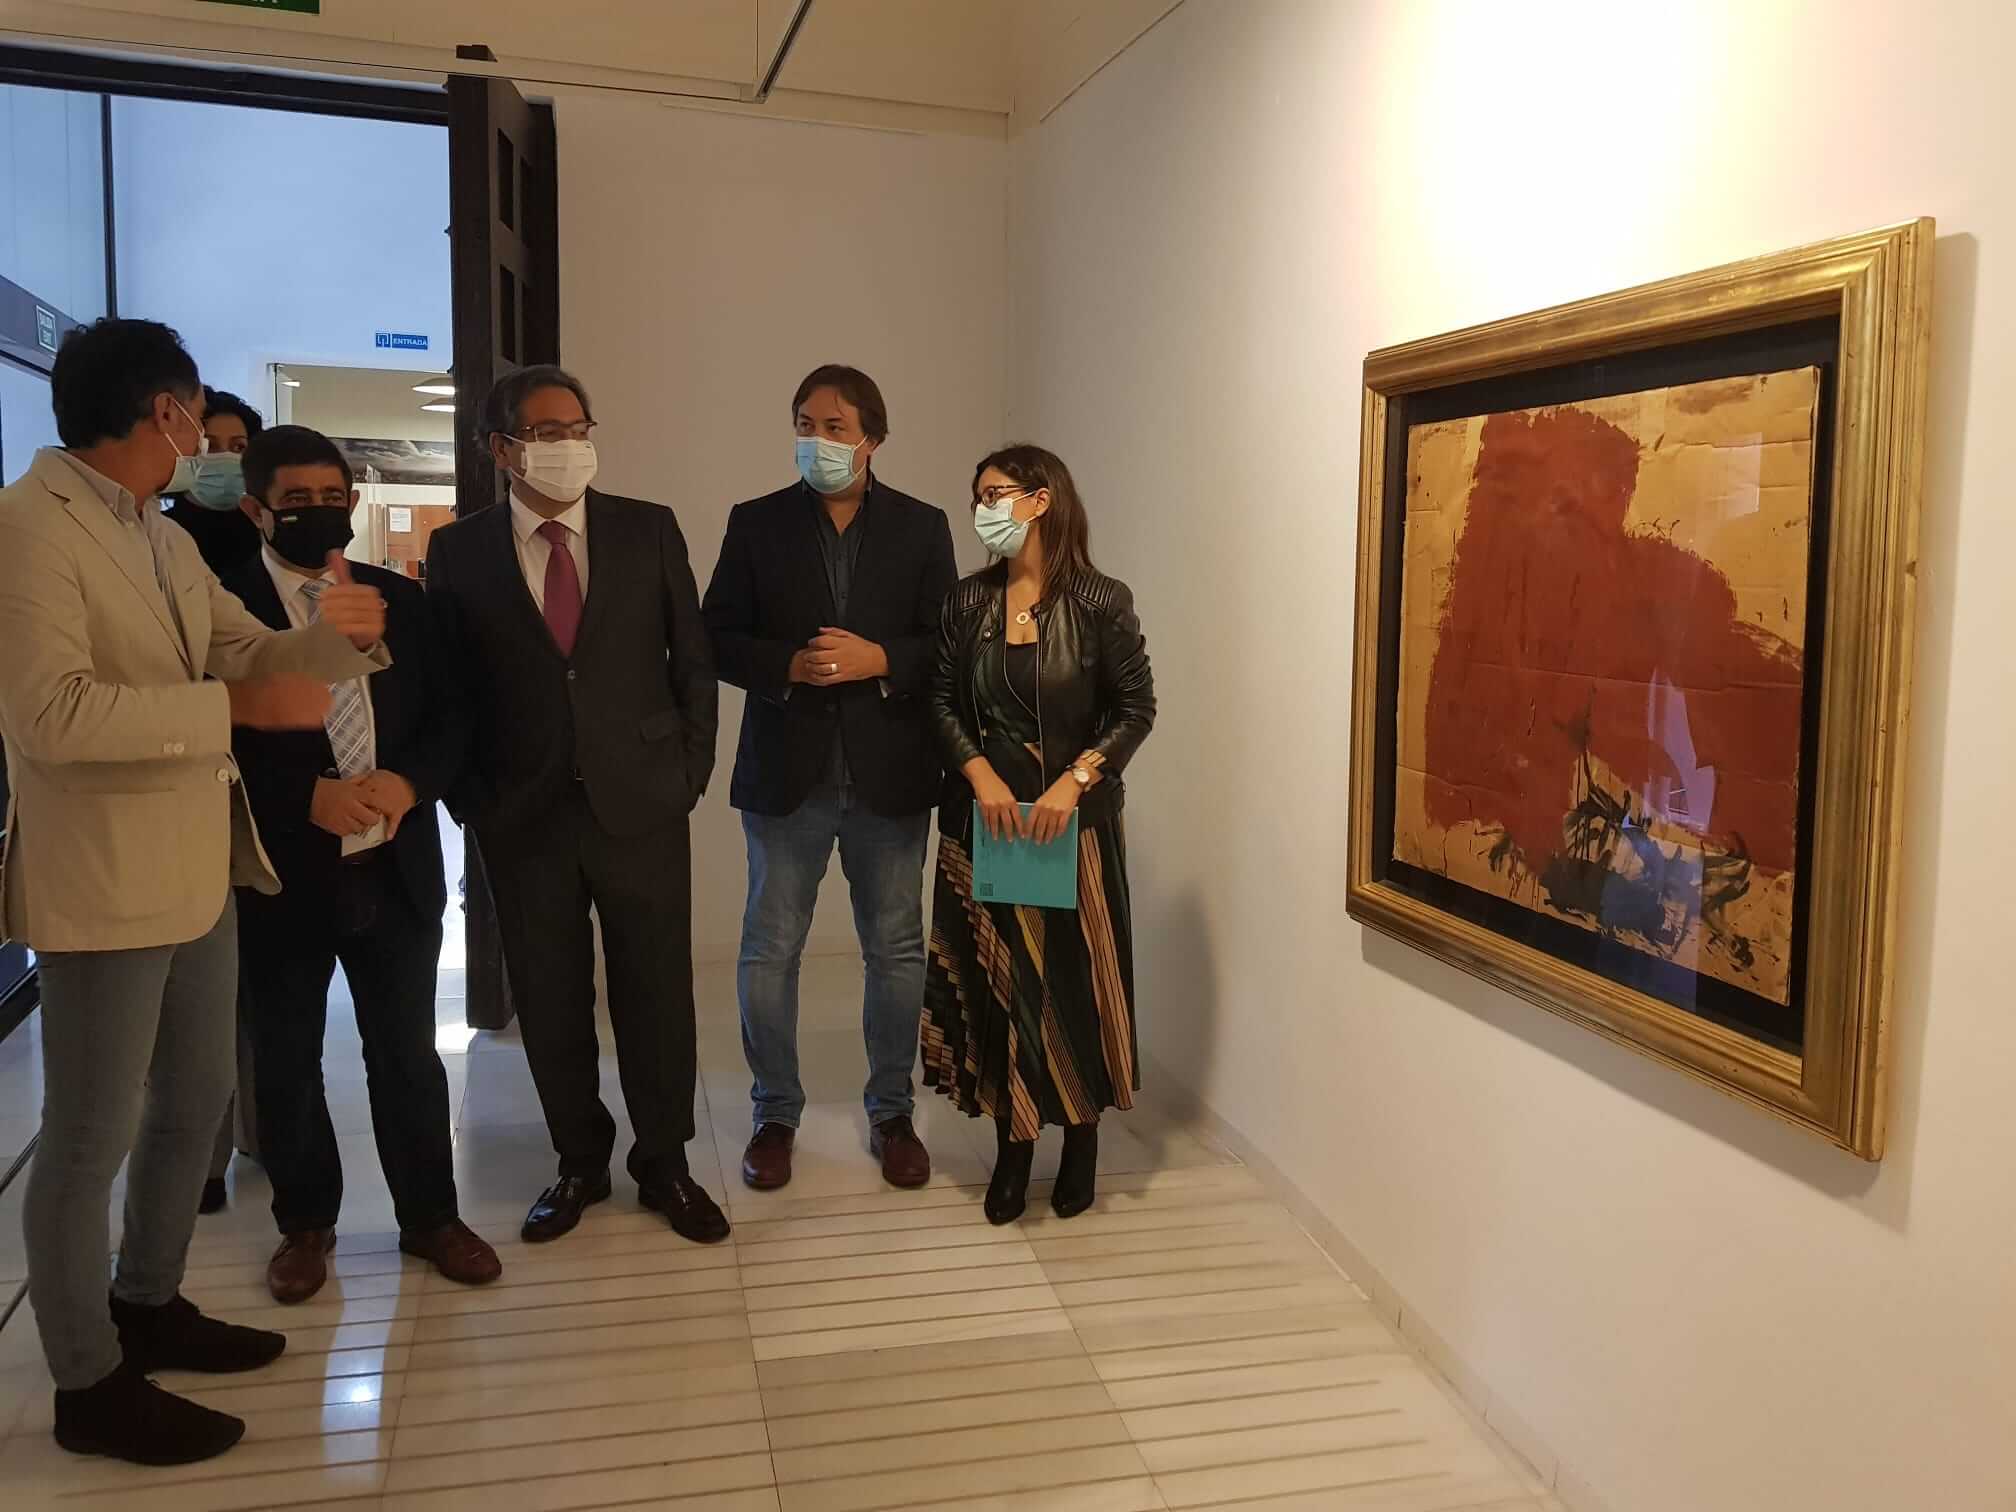 El Centro Cultural Baños Árabes acogerá hasta el 10 de enero una muestra con 26 obras de grandes artistas de vanguardia